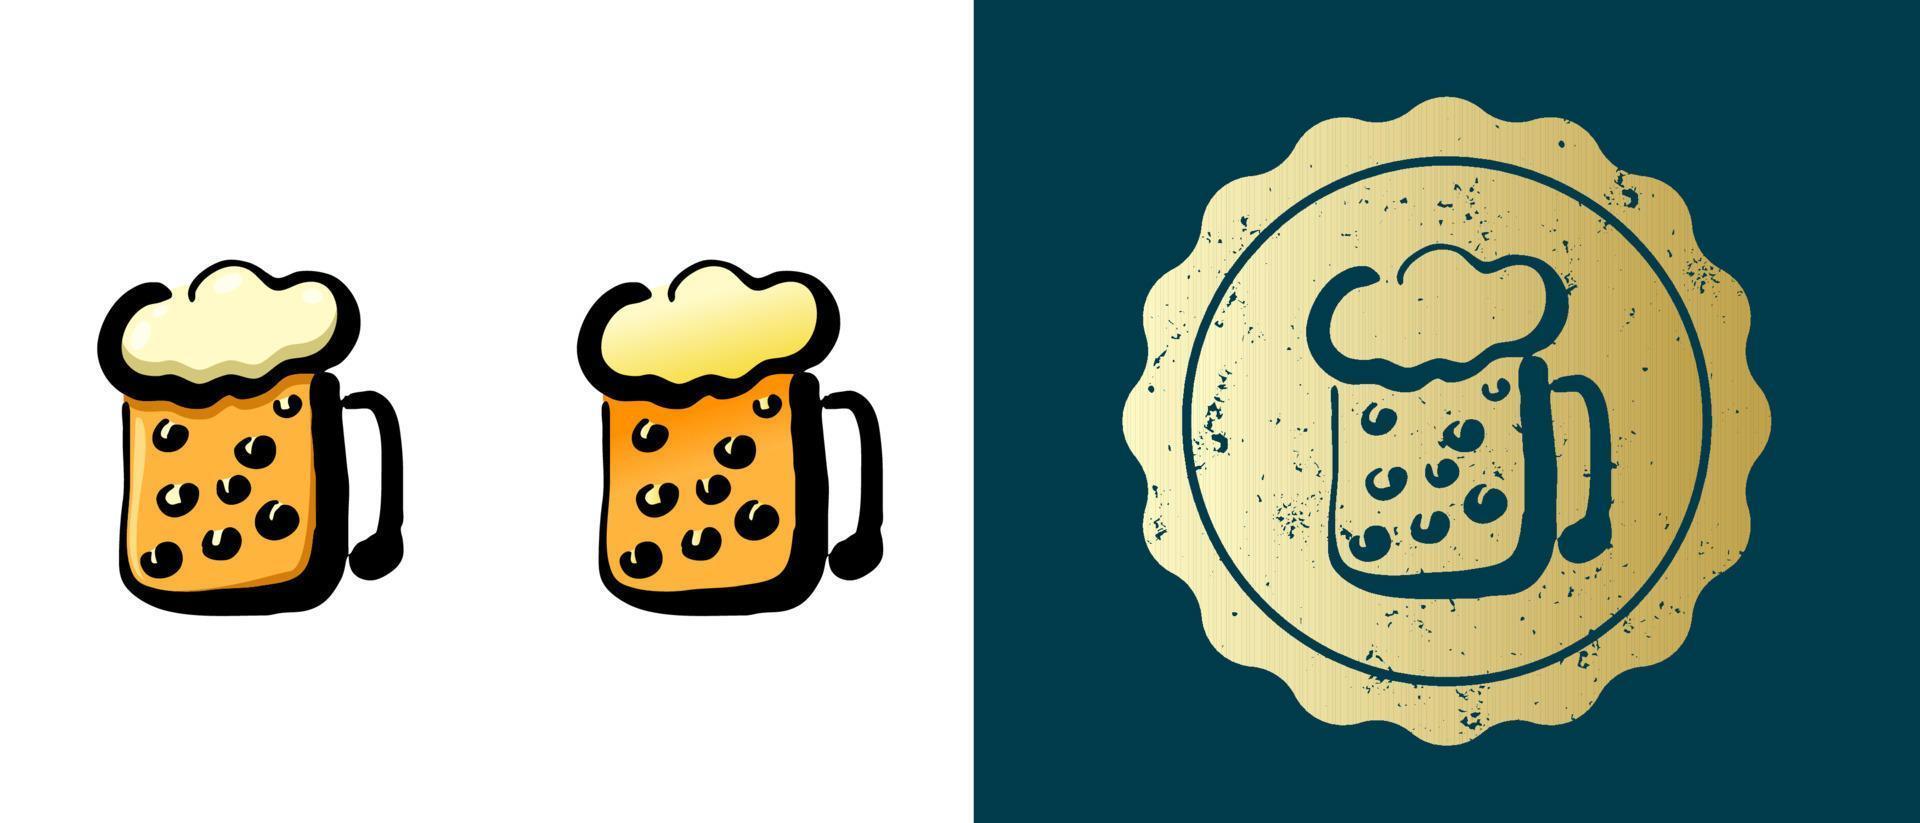 este es un conjunto de iconos de jarras de cerveza retro, contornos y degradados. esta es una etiqueta de oro, una etiqueta de jarra de cerveza. solución elegante para el diseño de envases y sitios web. sello de oro grunge redondo. vector